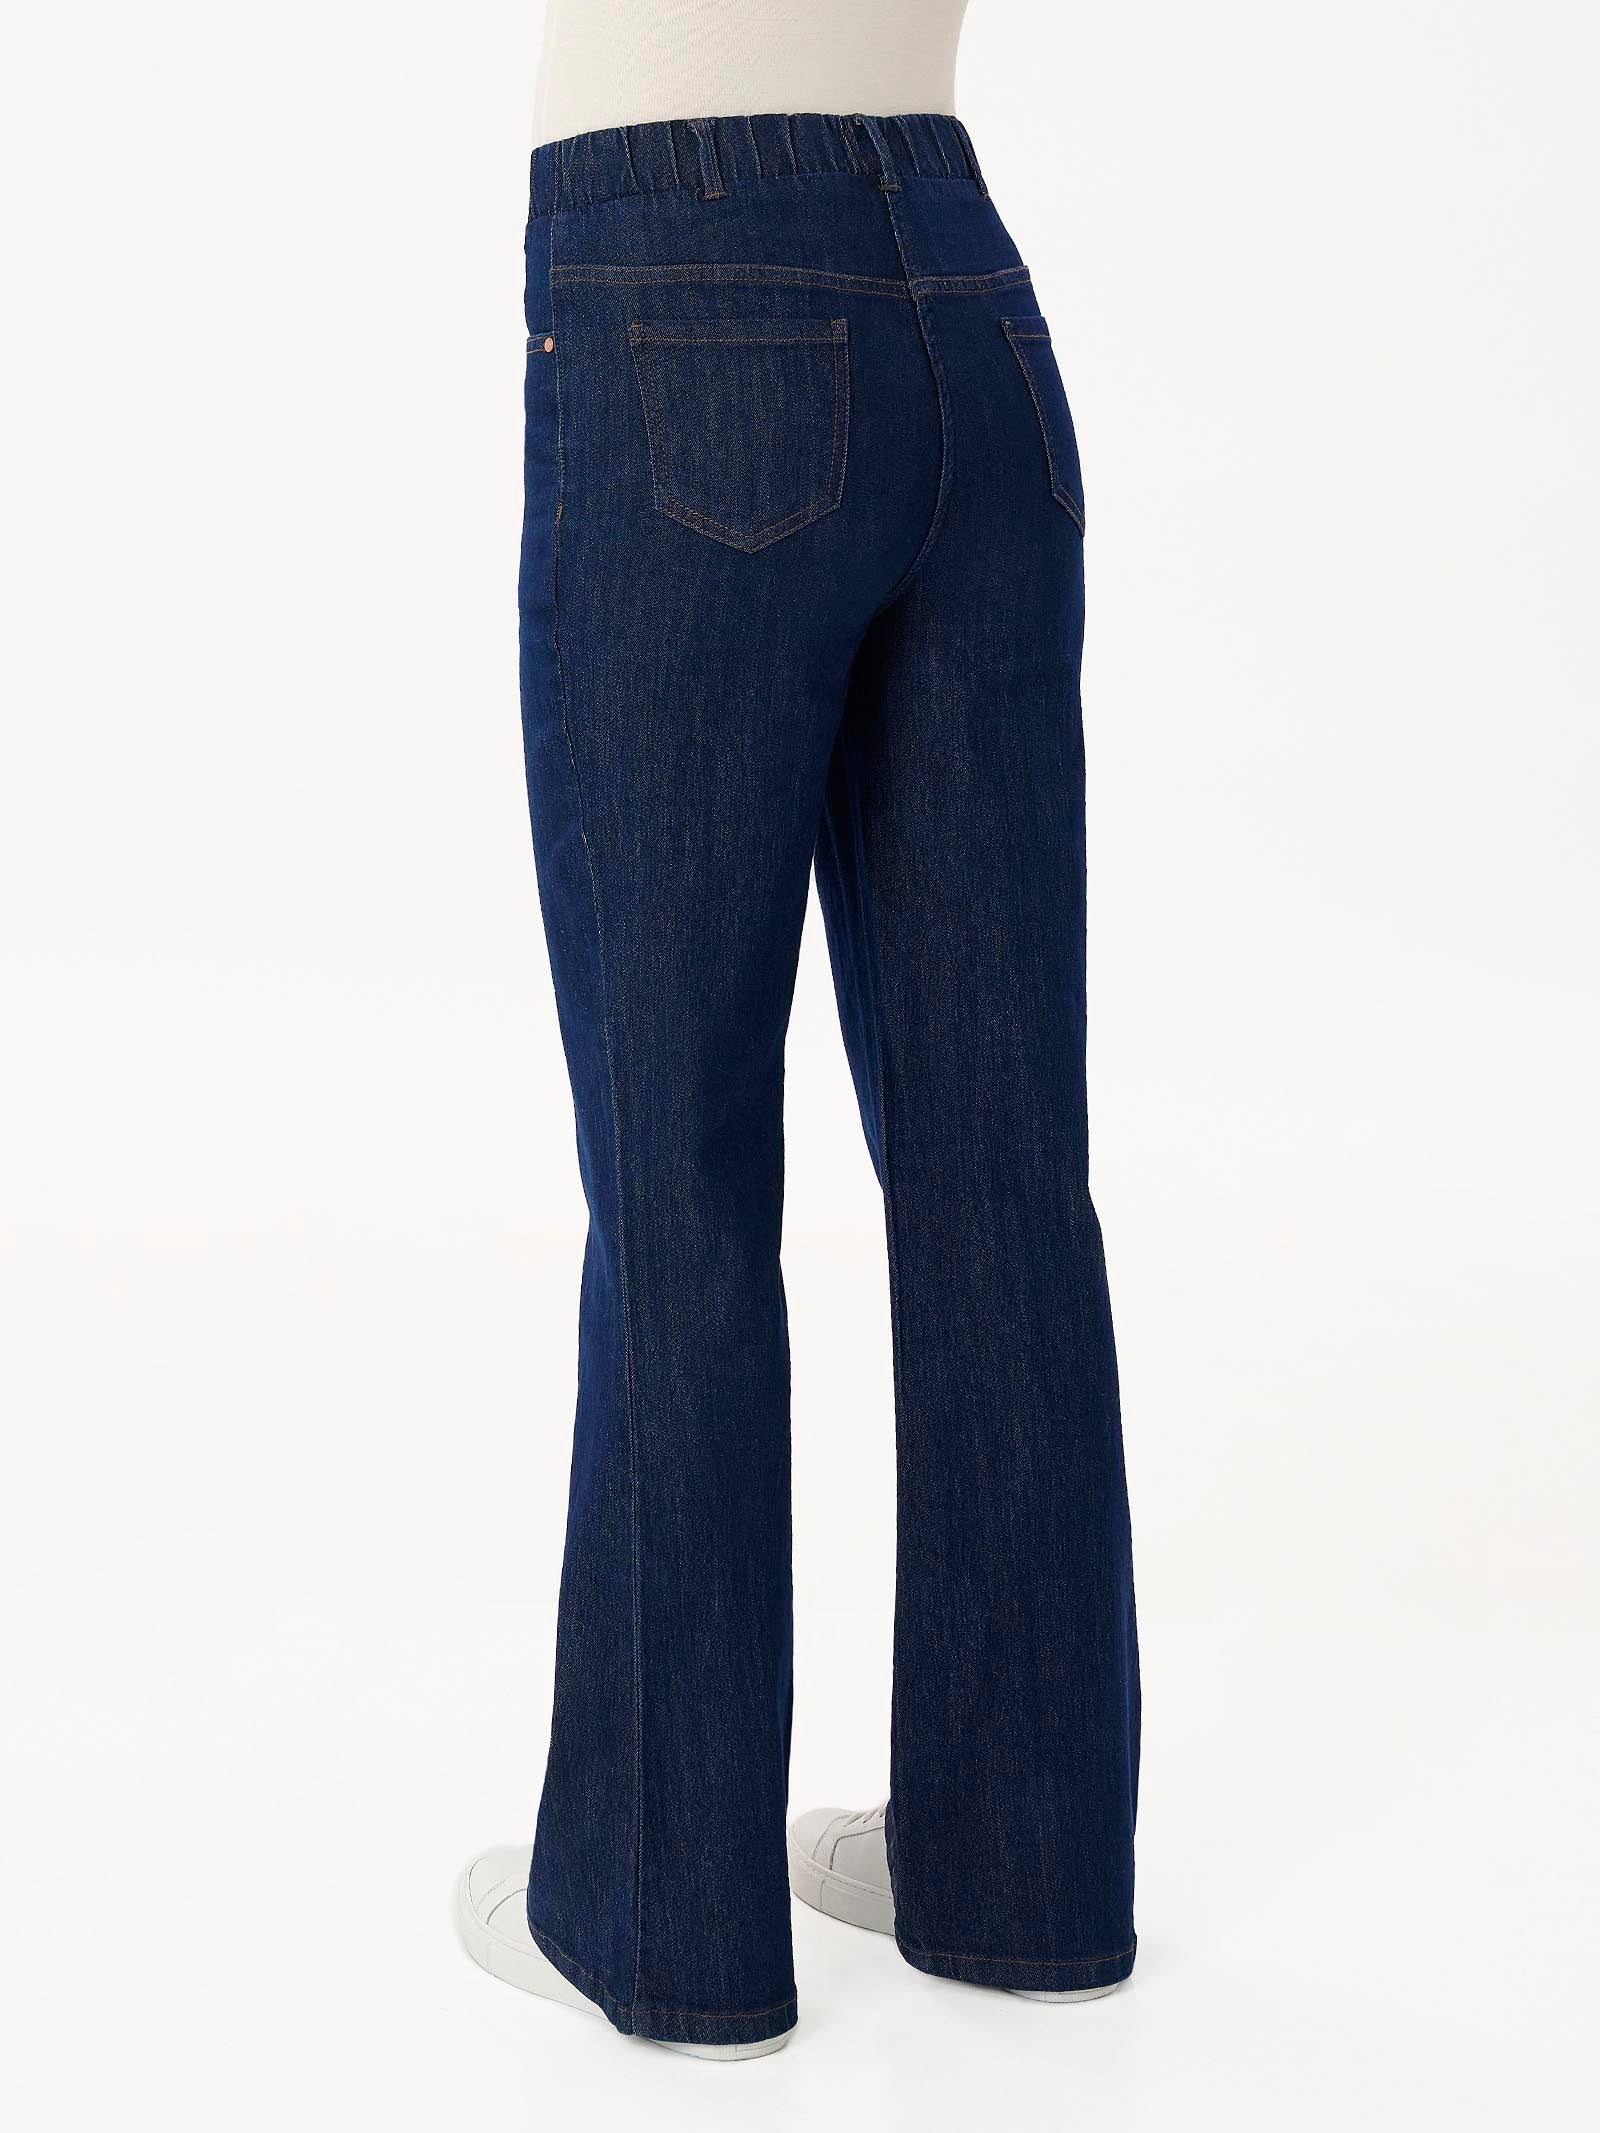 Jeans Flare in tessuto 4 Seasons Denim  -  - Ragno